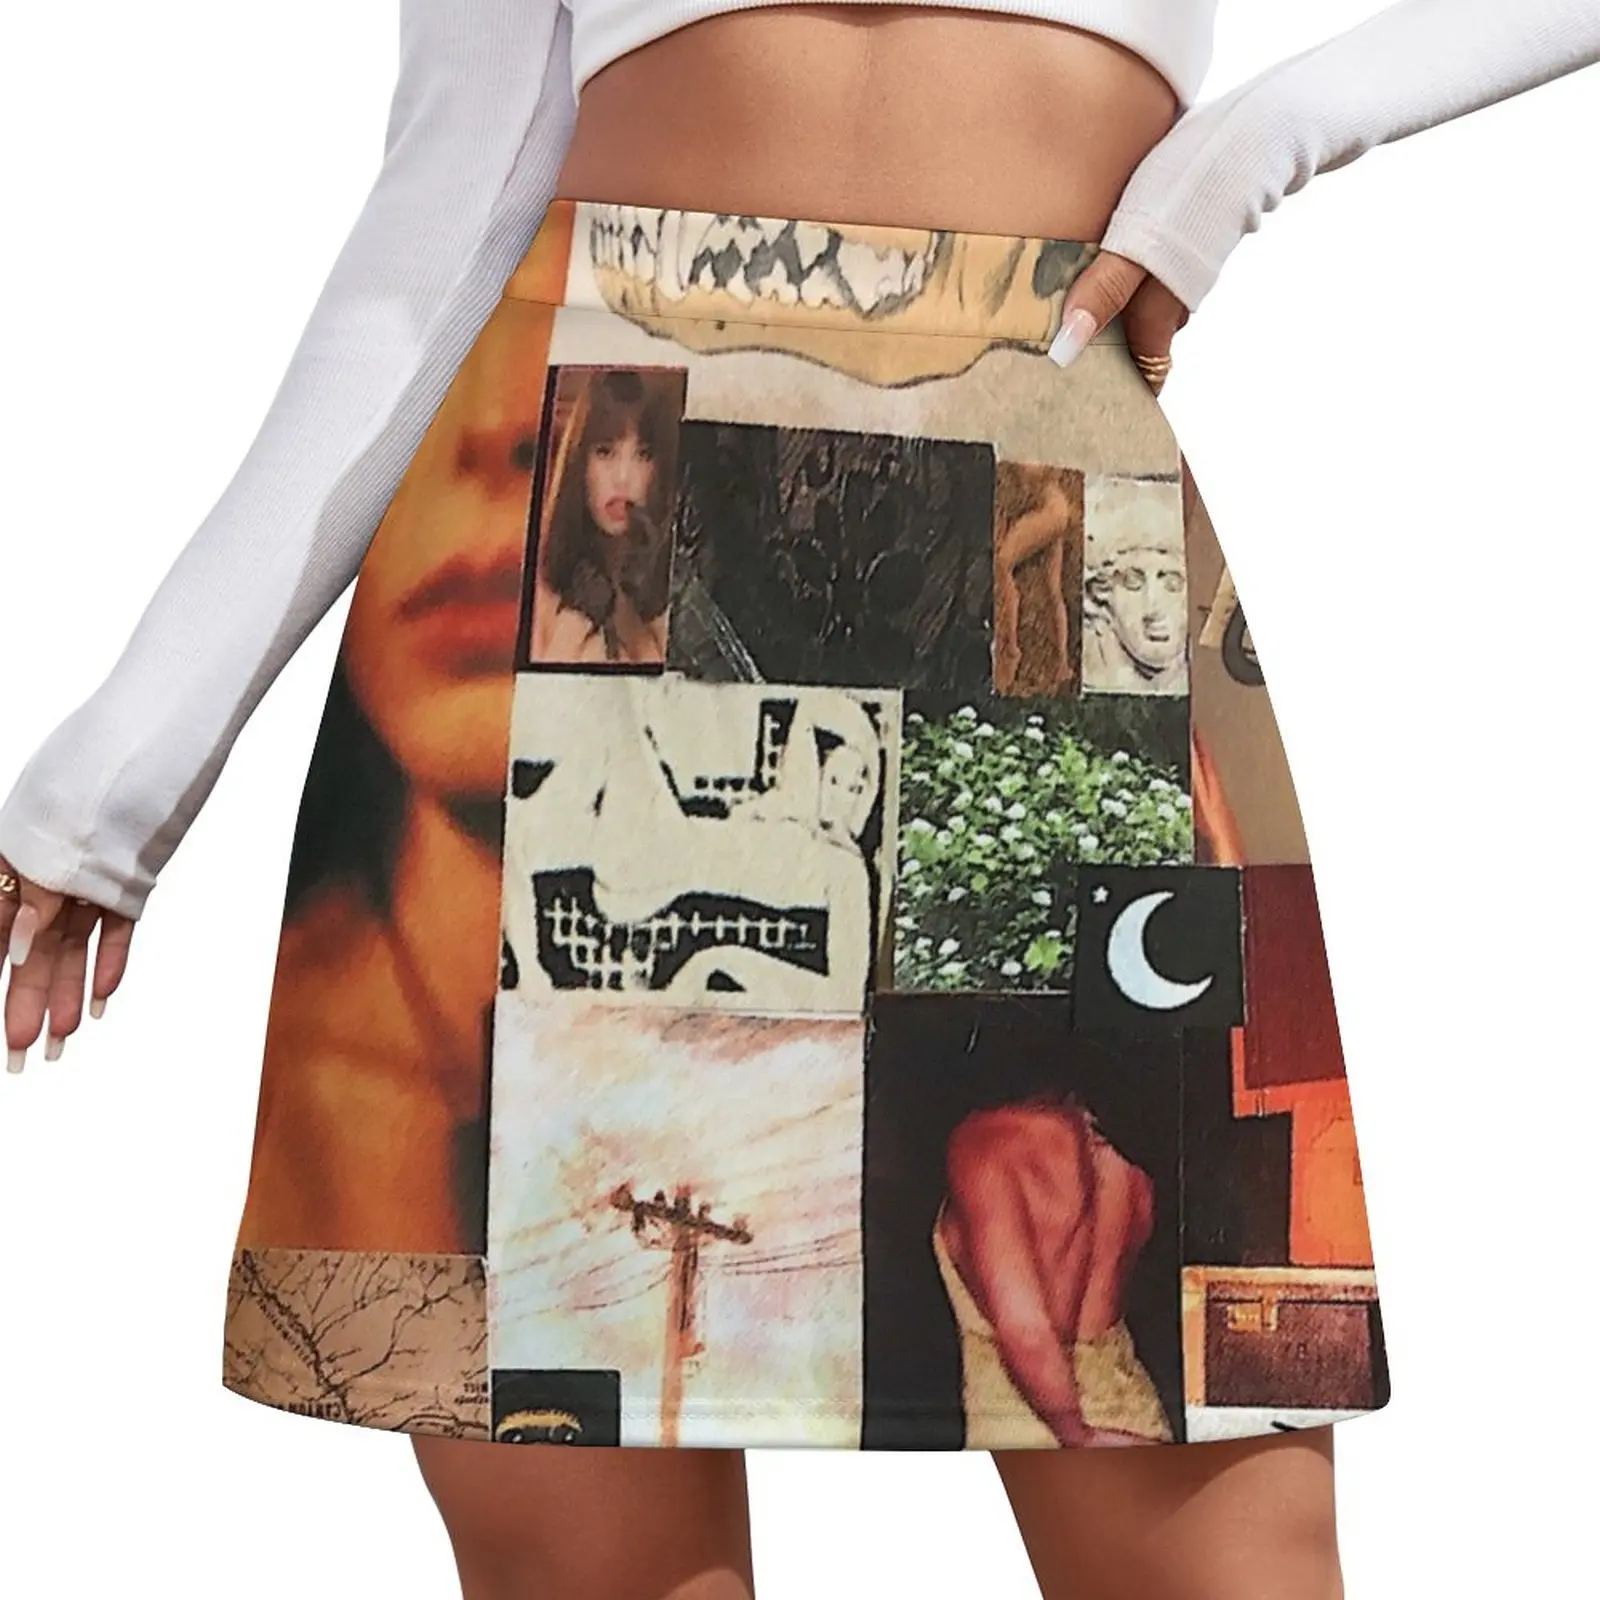 

Женская атласная мини-юбка с коллажем «Огонь и дождь»